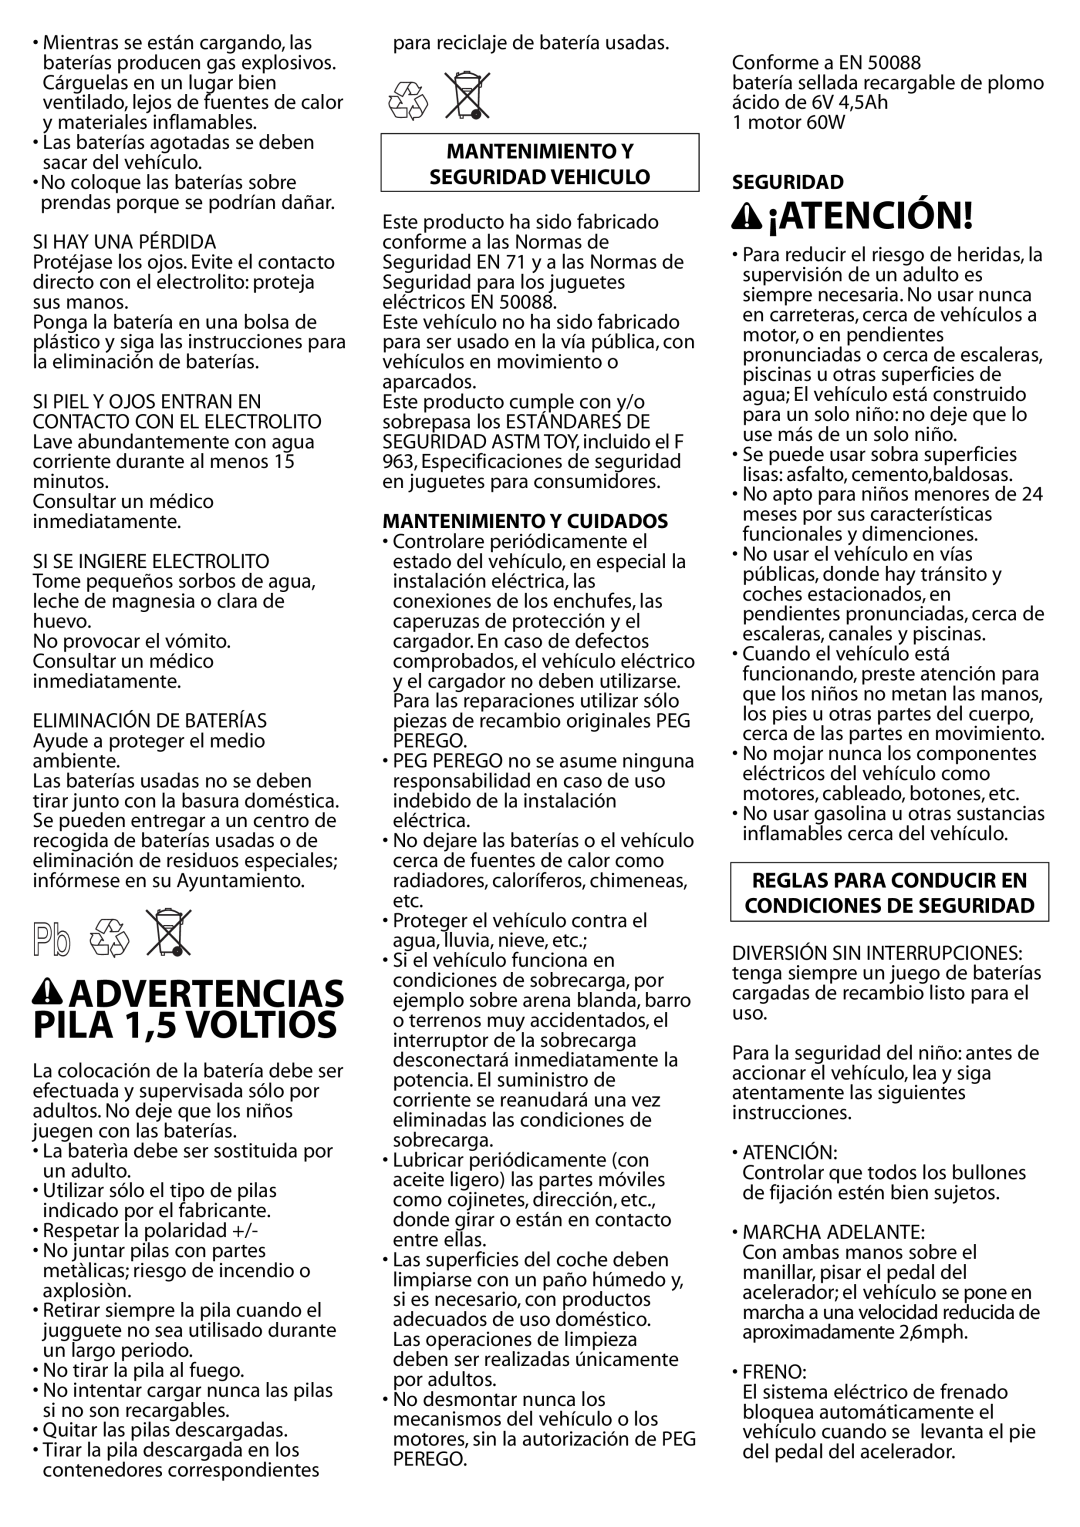 Peg-Perego IGED1061 6V manual ¡Atención, ADVERTENCIAS PILA 1,5 VOLTIOS, Mantenimiento Y Seguridad Vehiculo 